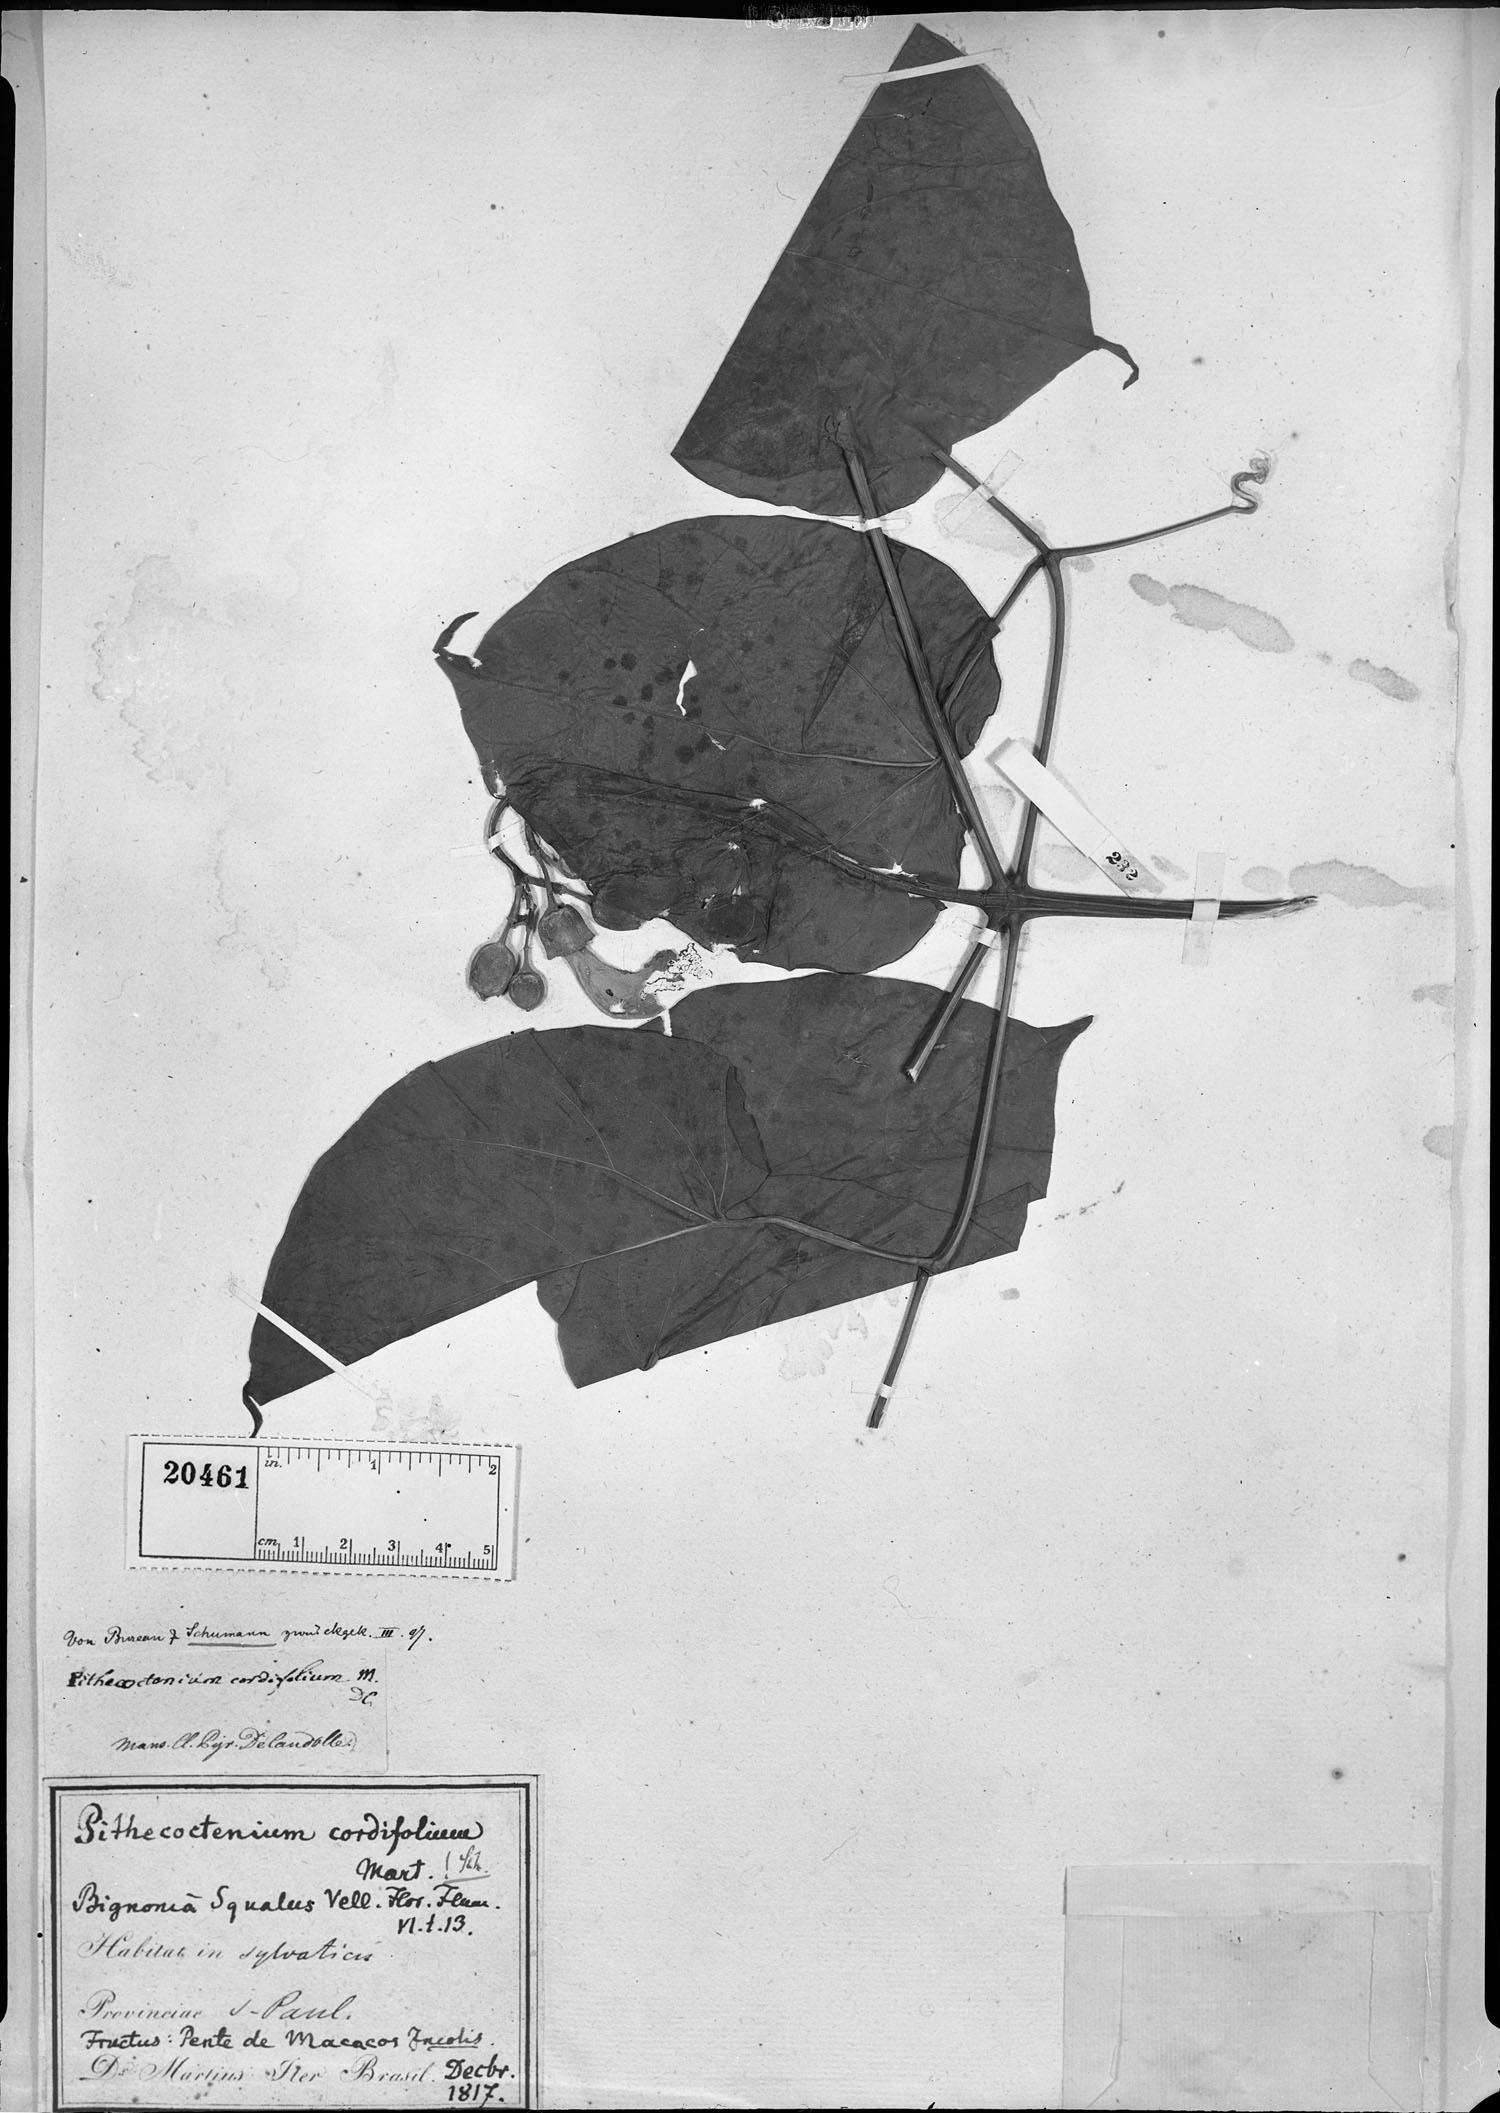 Pithecoctenium cordifolium image